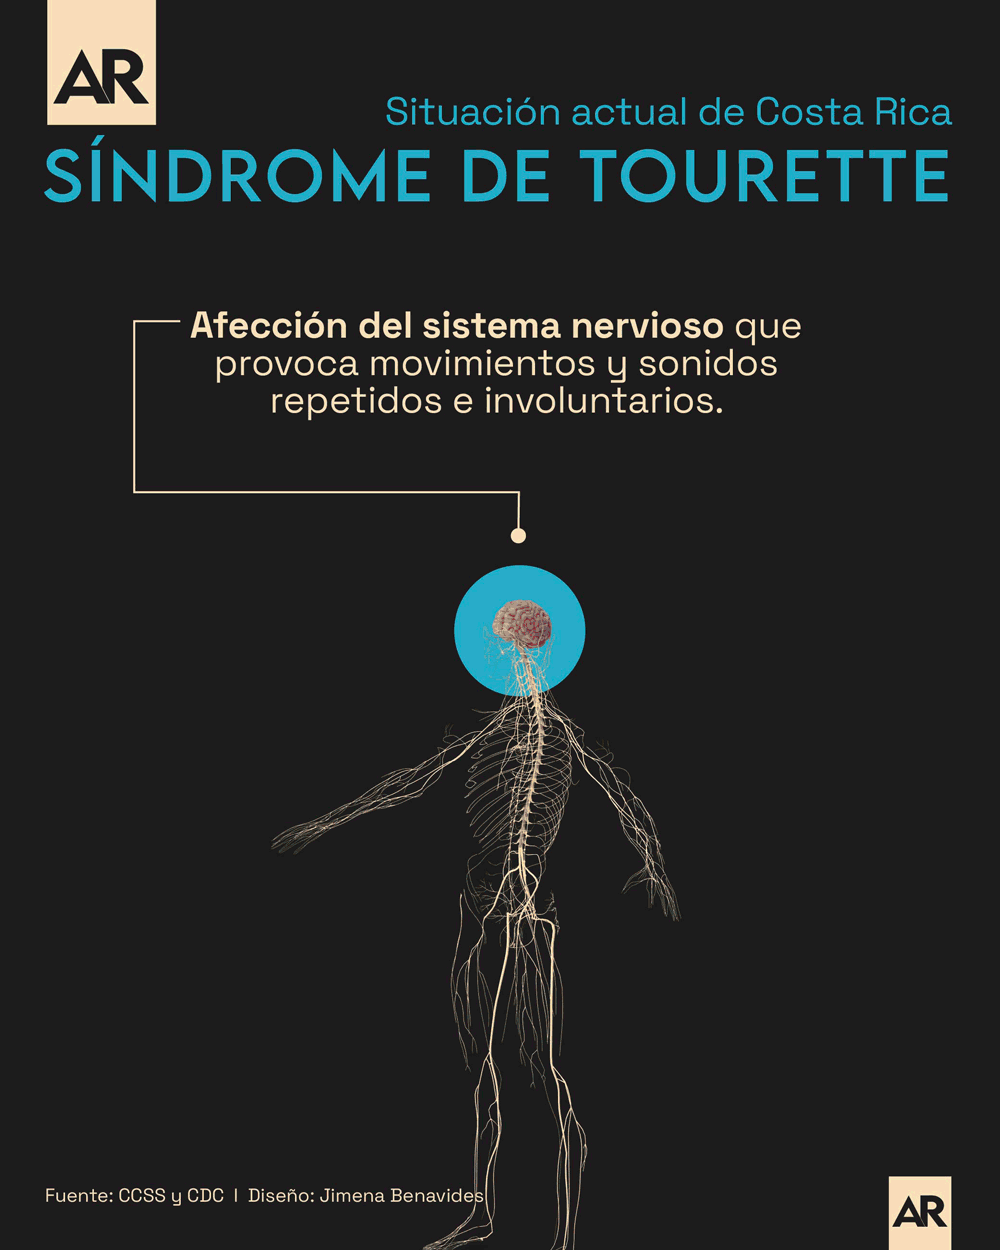 Tourette,Salud,Costa Rica,Nacional,Síndrome de Tourette